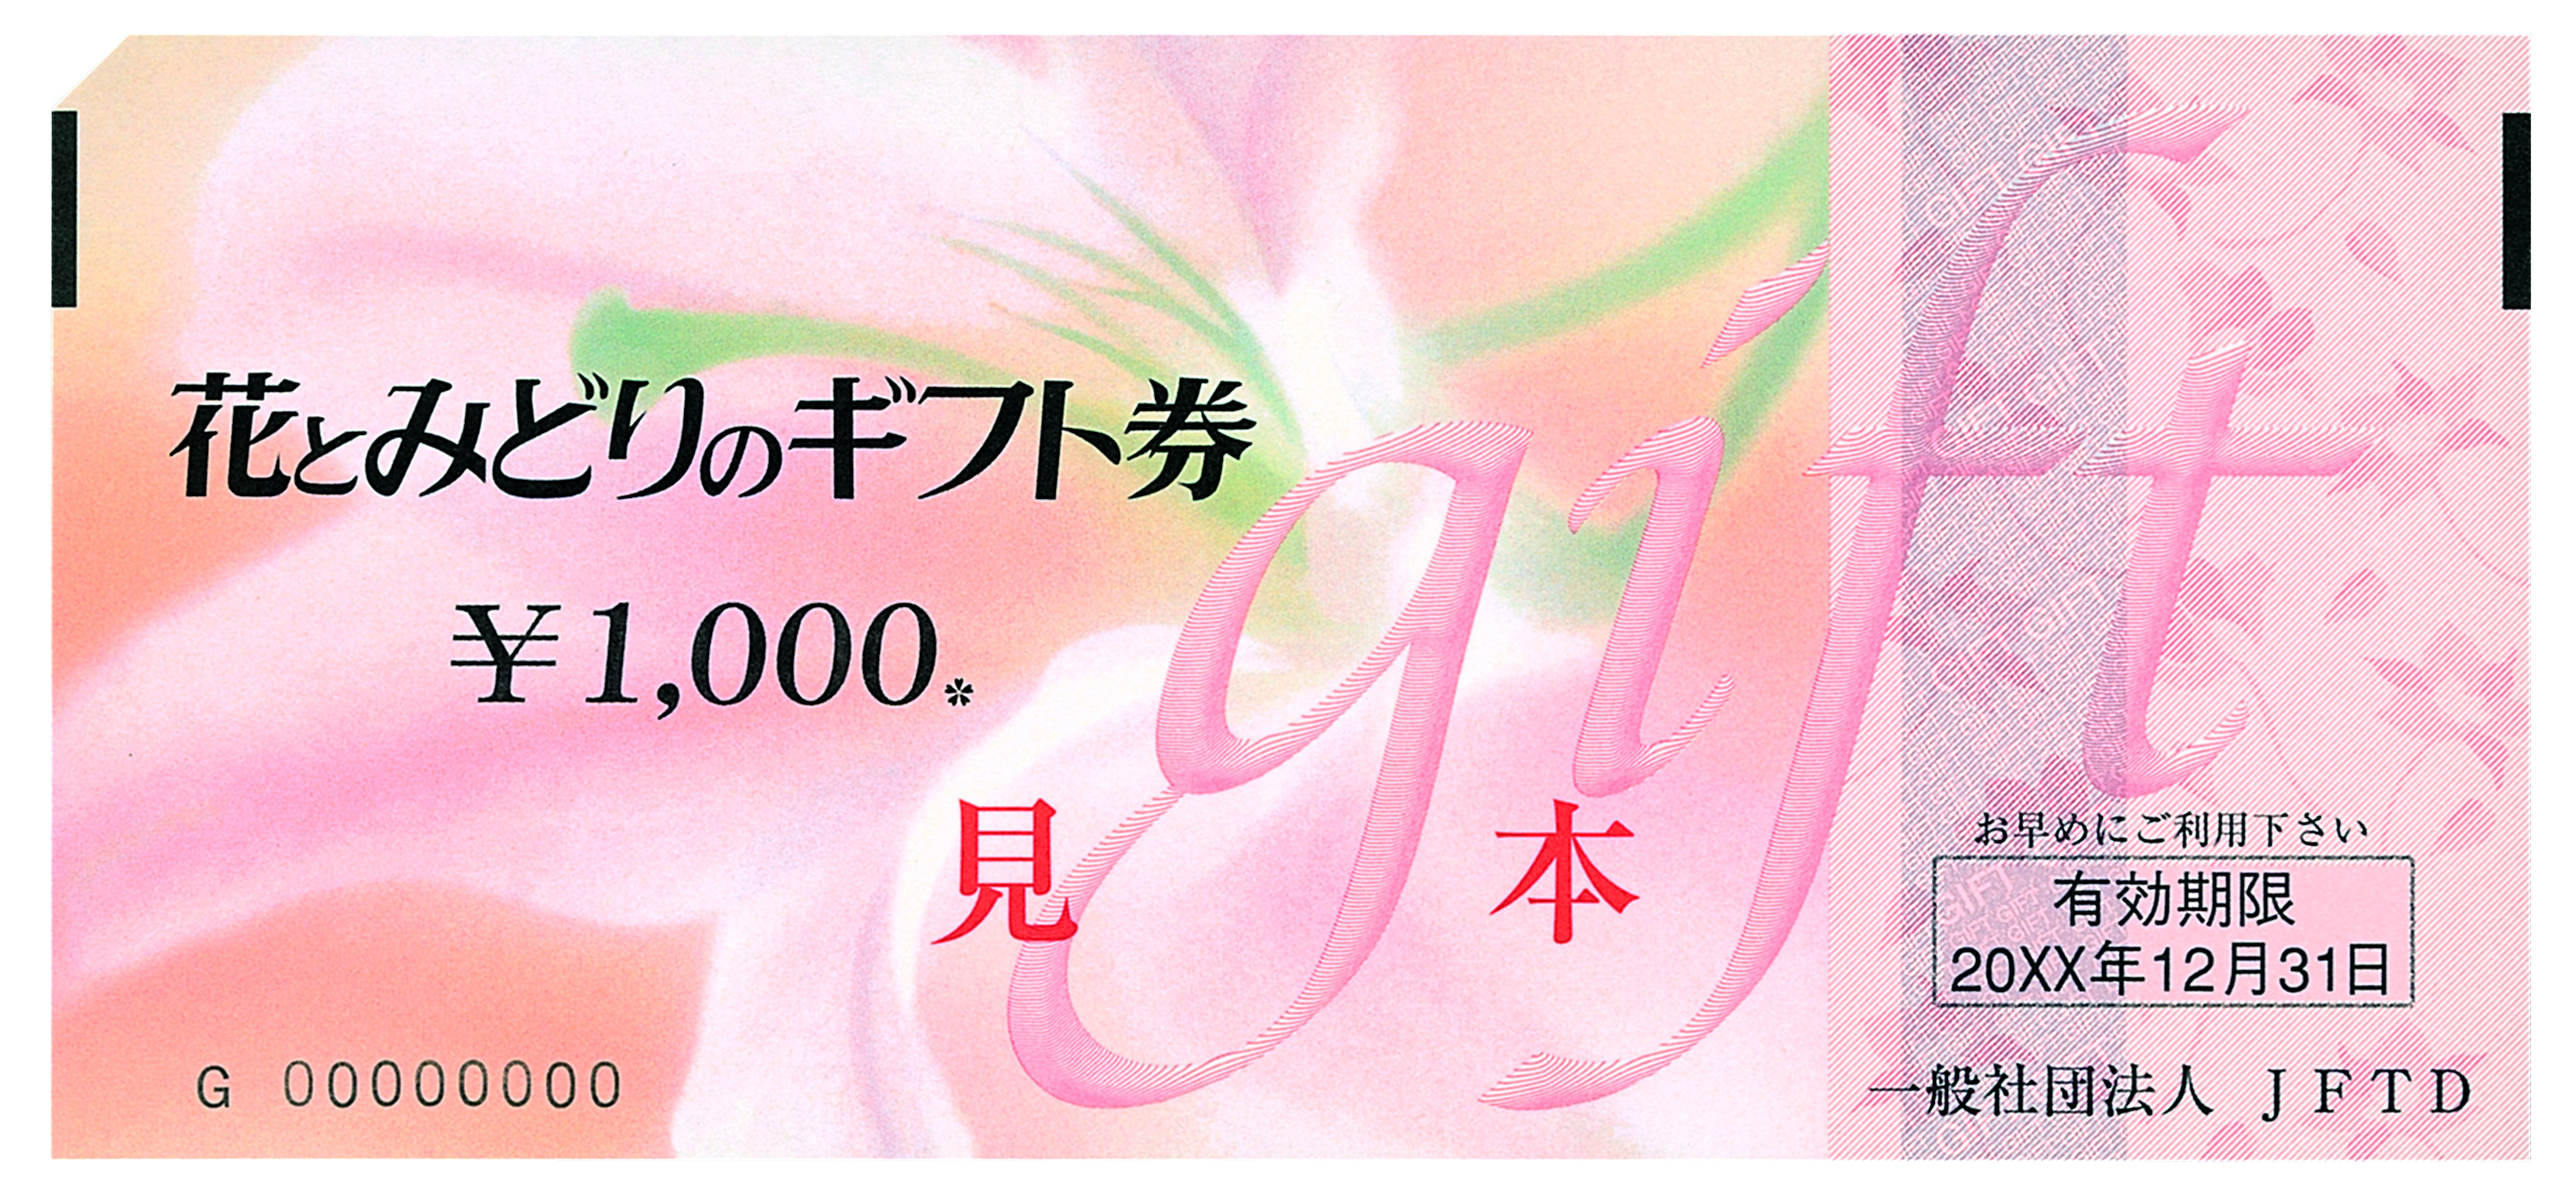 2万円分 花とみどりのギフト券 1,000円x20枚ショッピング - ショッピング